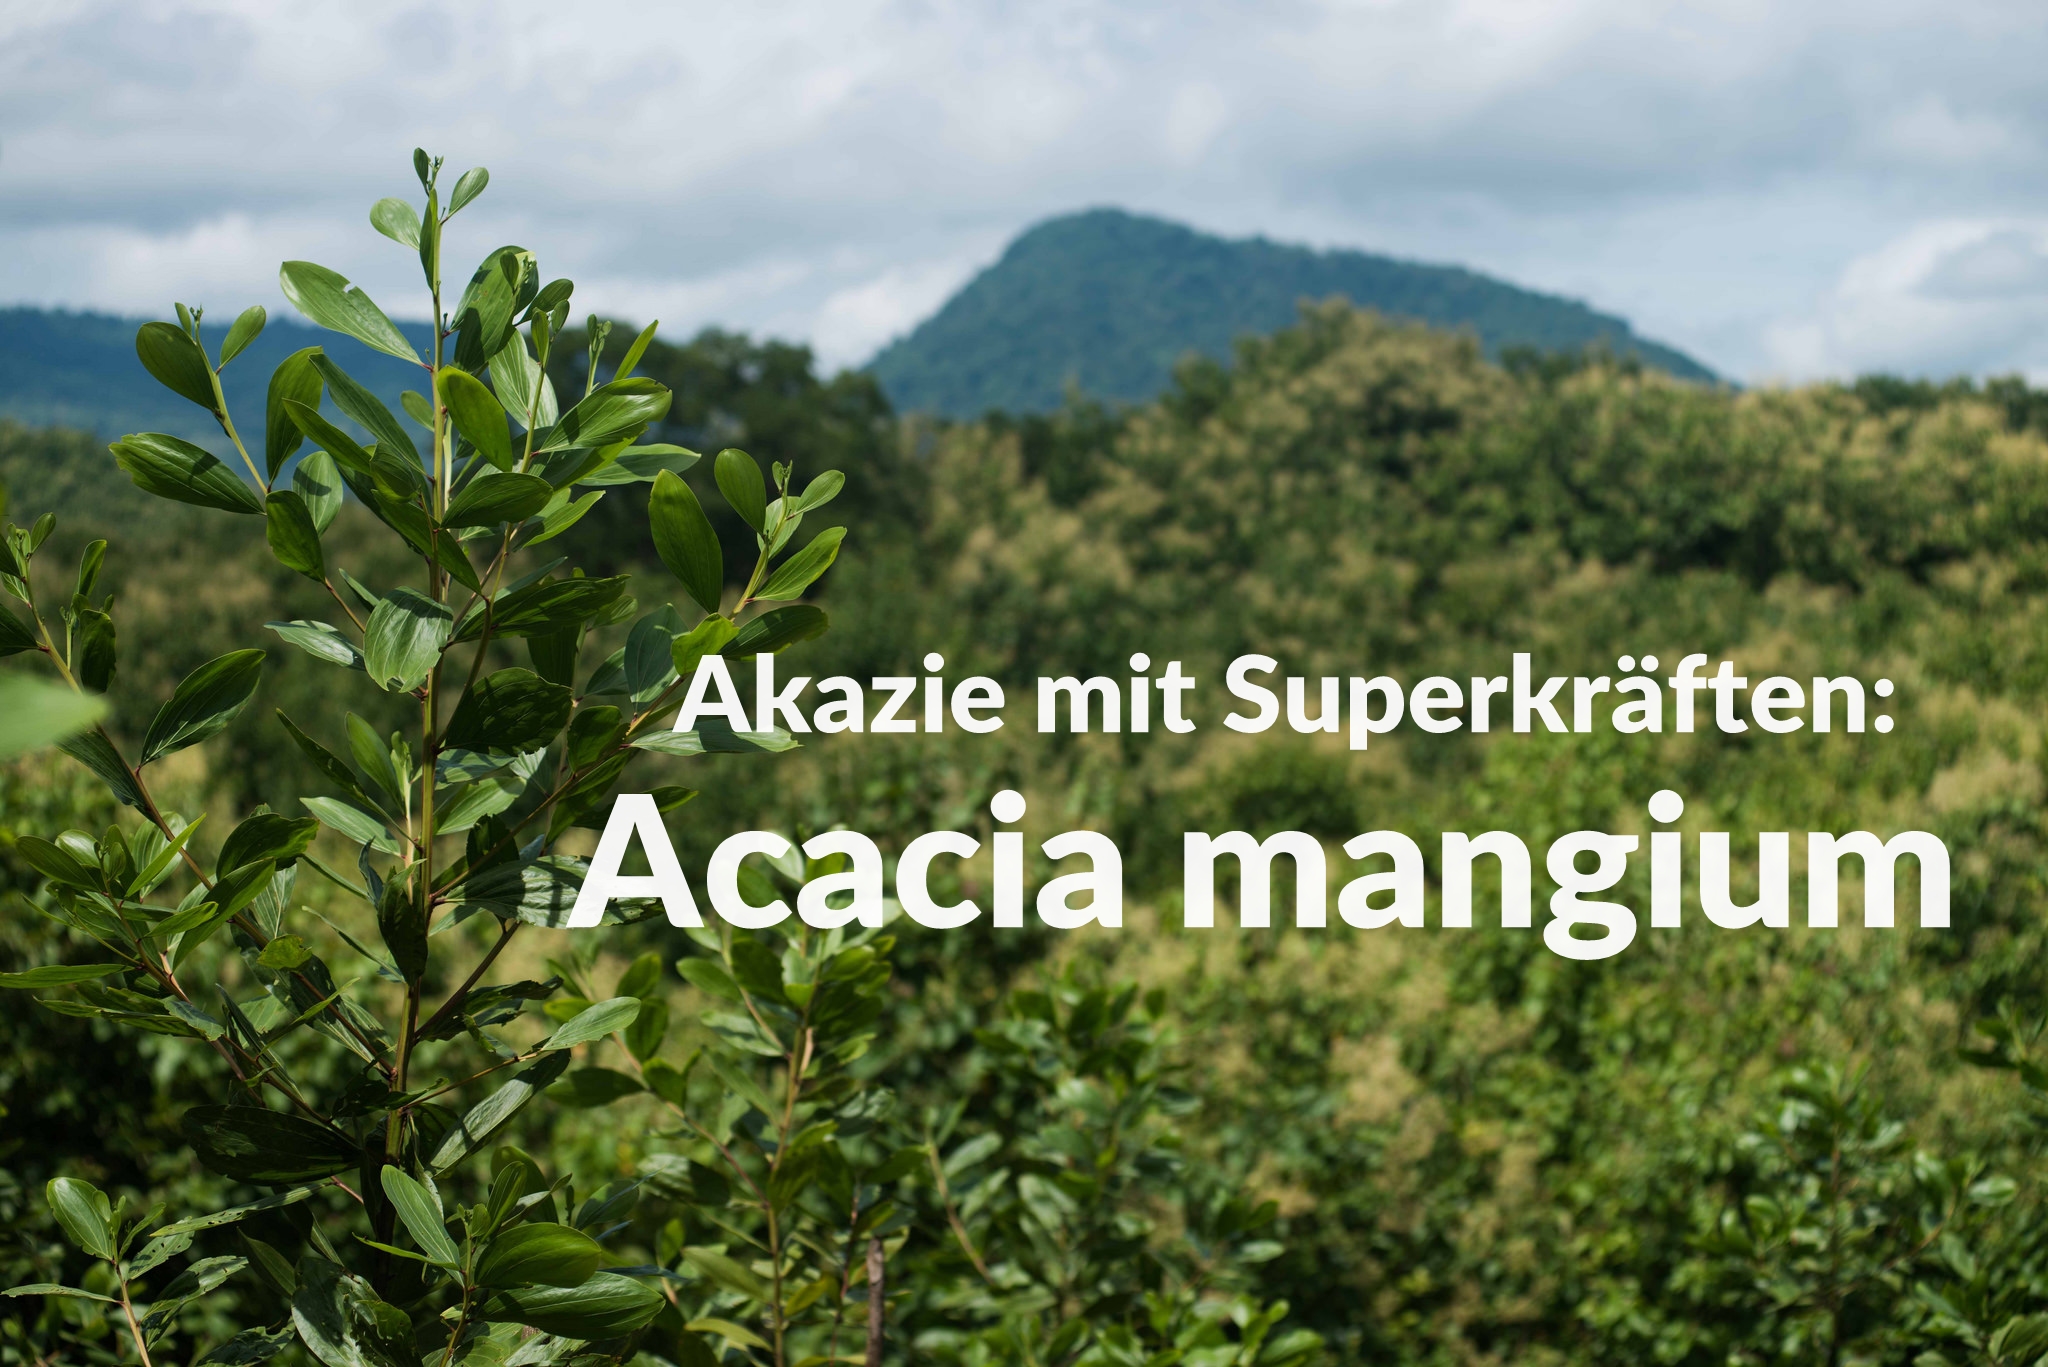 Akazie Mit Superkraften Acacia Mangium Forestfinance Blog